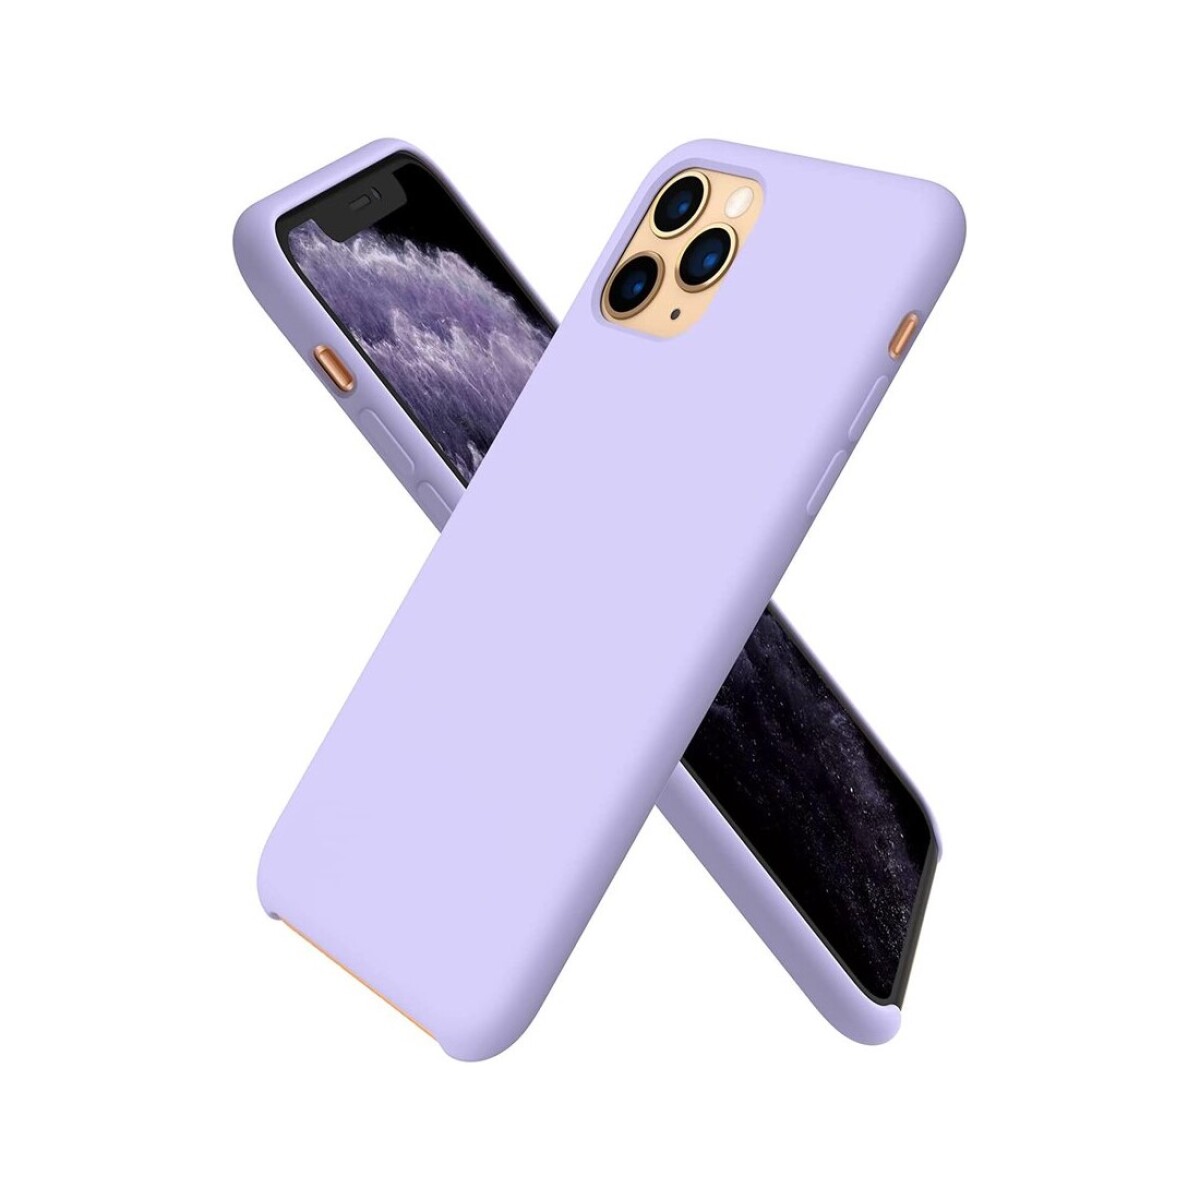 Protector case de silicona para iphone 11 pro - Lila pastel 